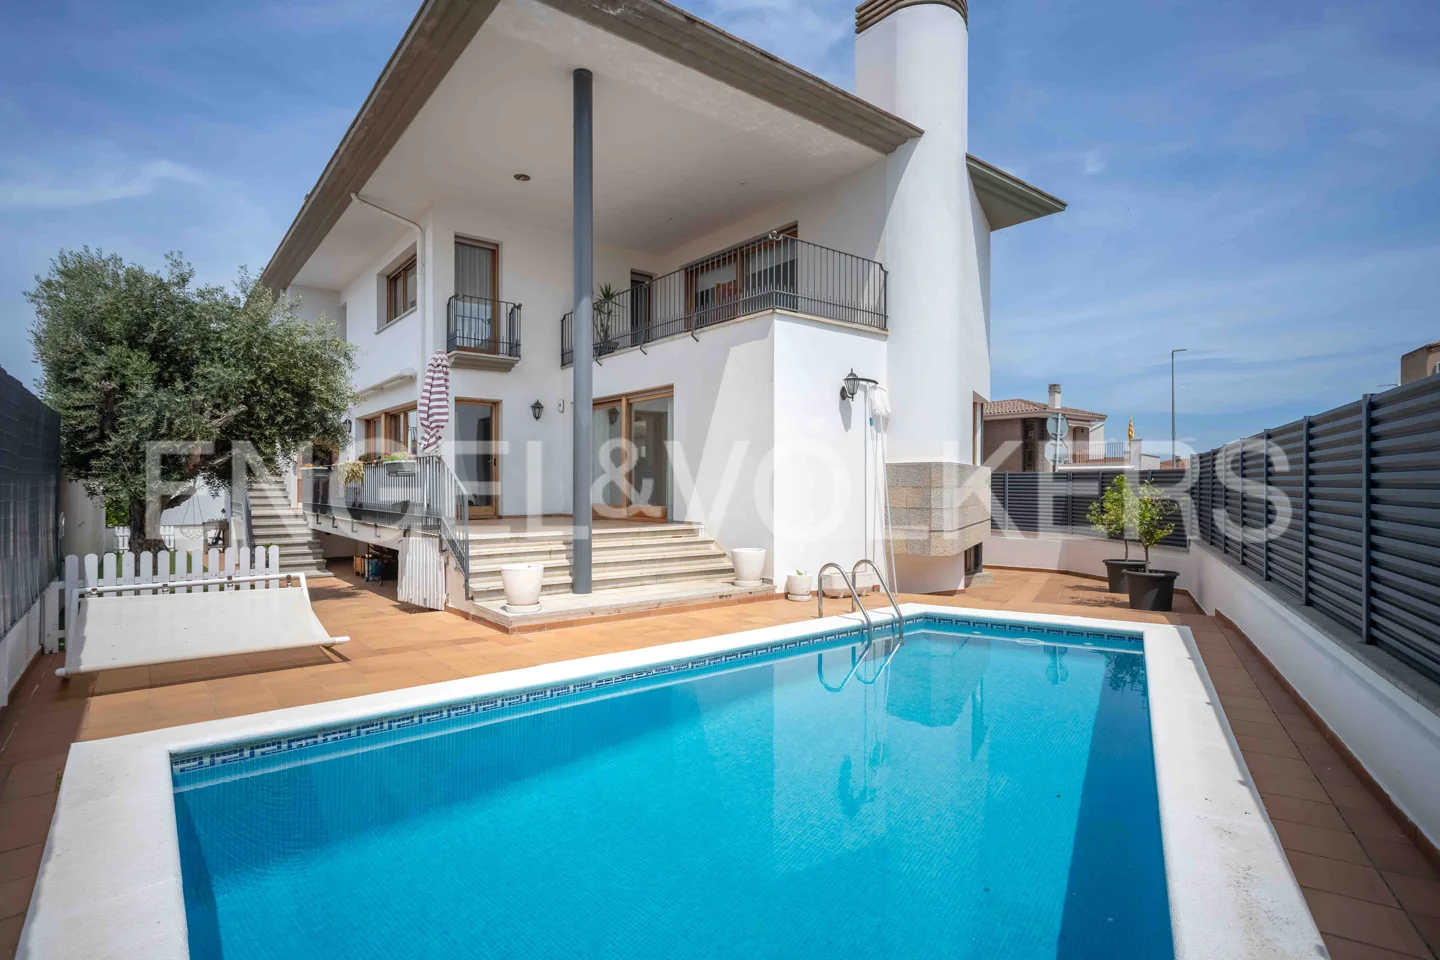 Casa unifamiliar con piscina en Vilablareix